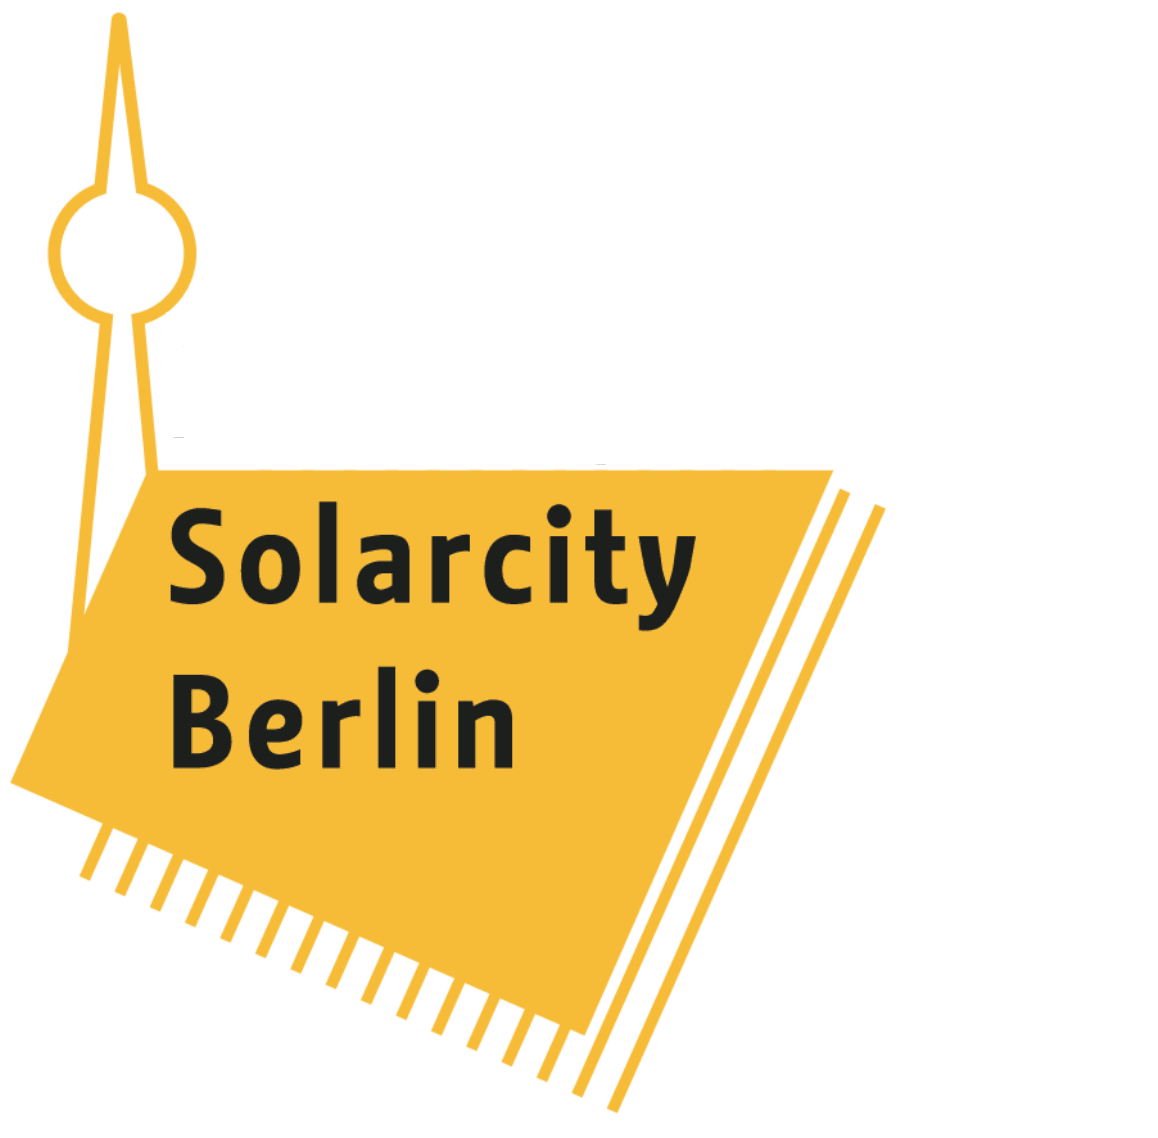 Solarwende Berlin - Masterplan Solarcity